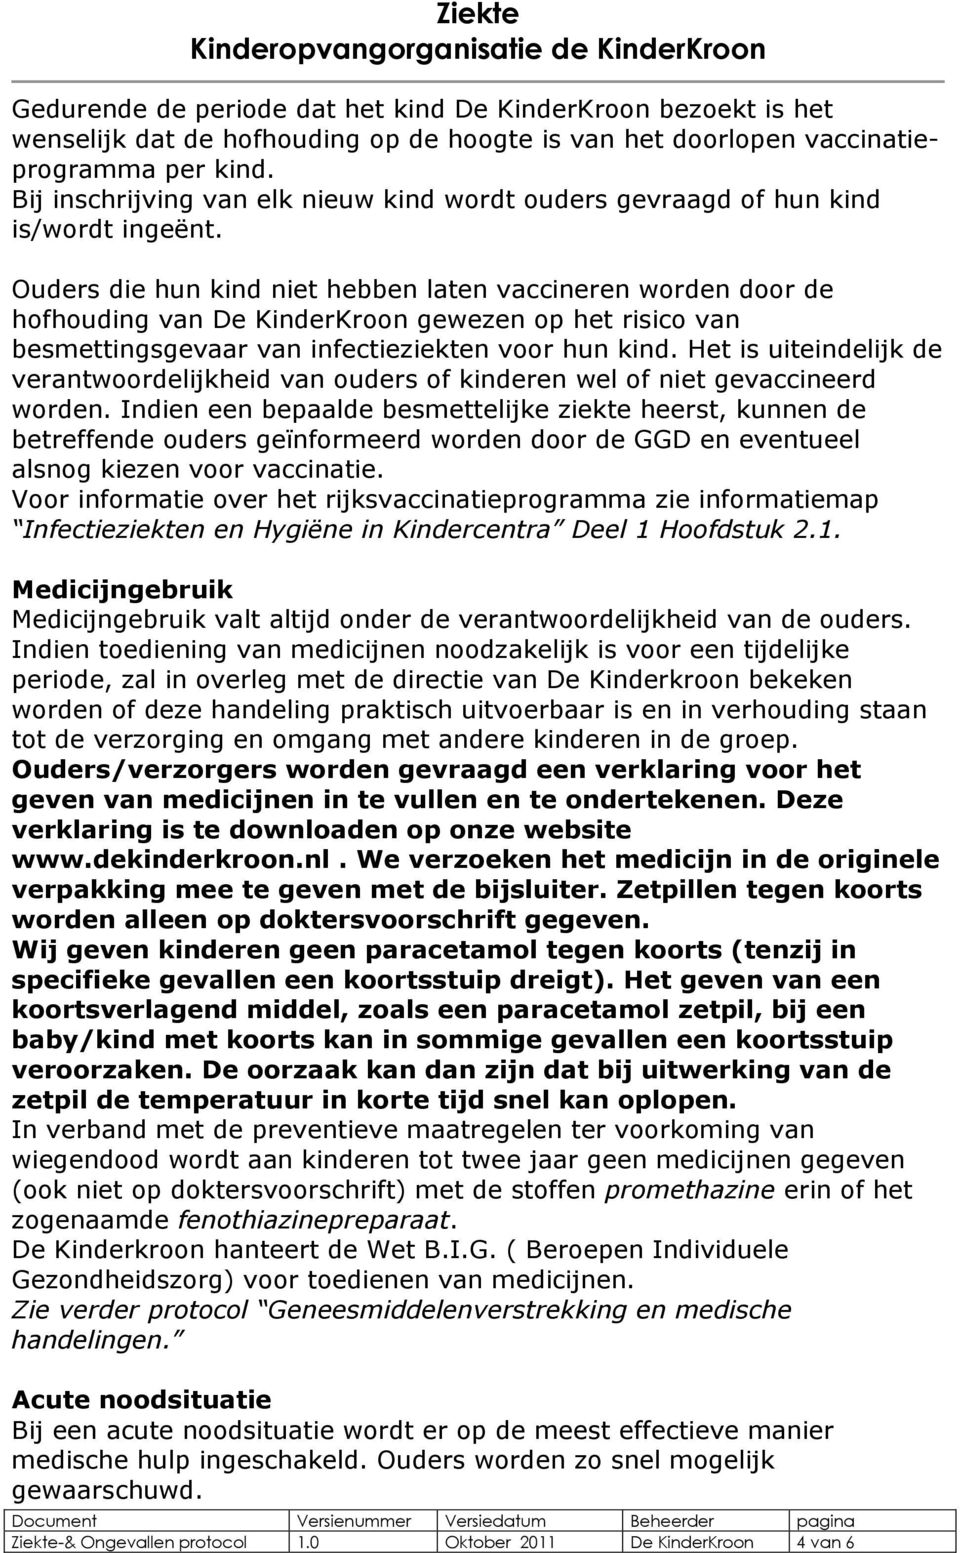 Ouders die hun kind niet hebben laten vaccineren worden door de hofhouding van De KinderKroon gewezen op het risico van besmettingsgevaar van infectieziekten voor hun kind.